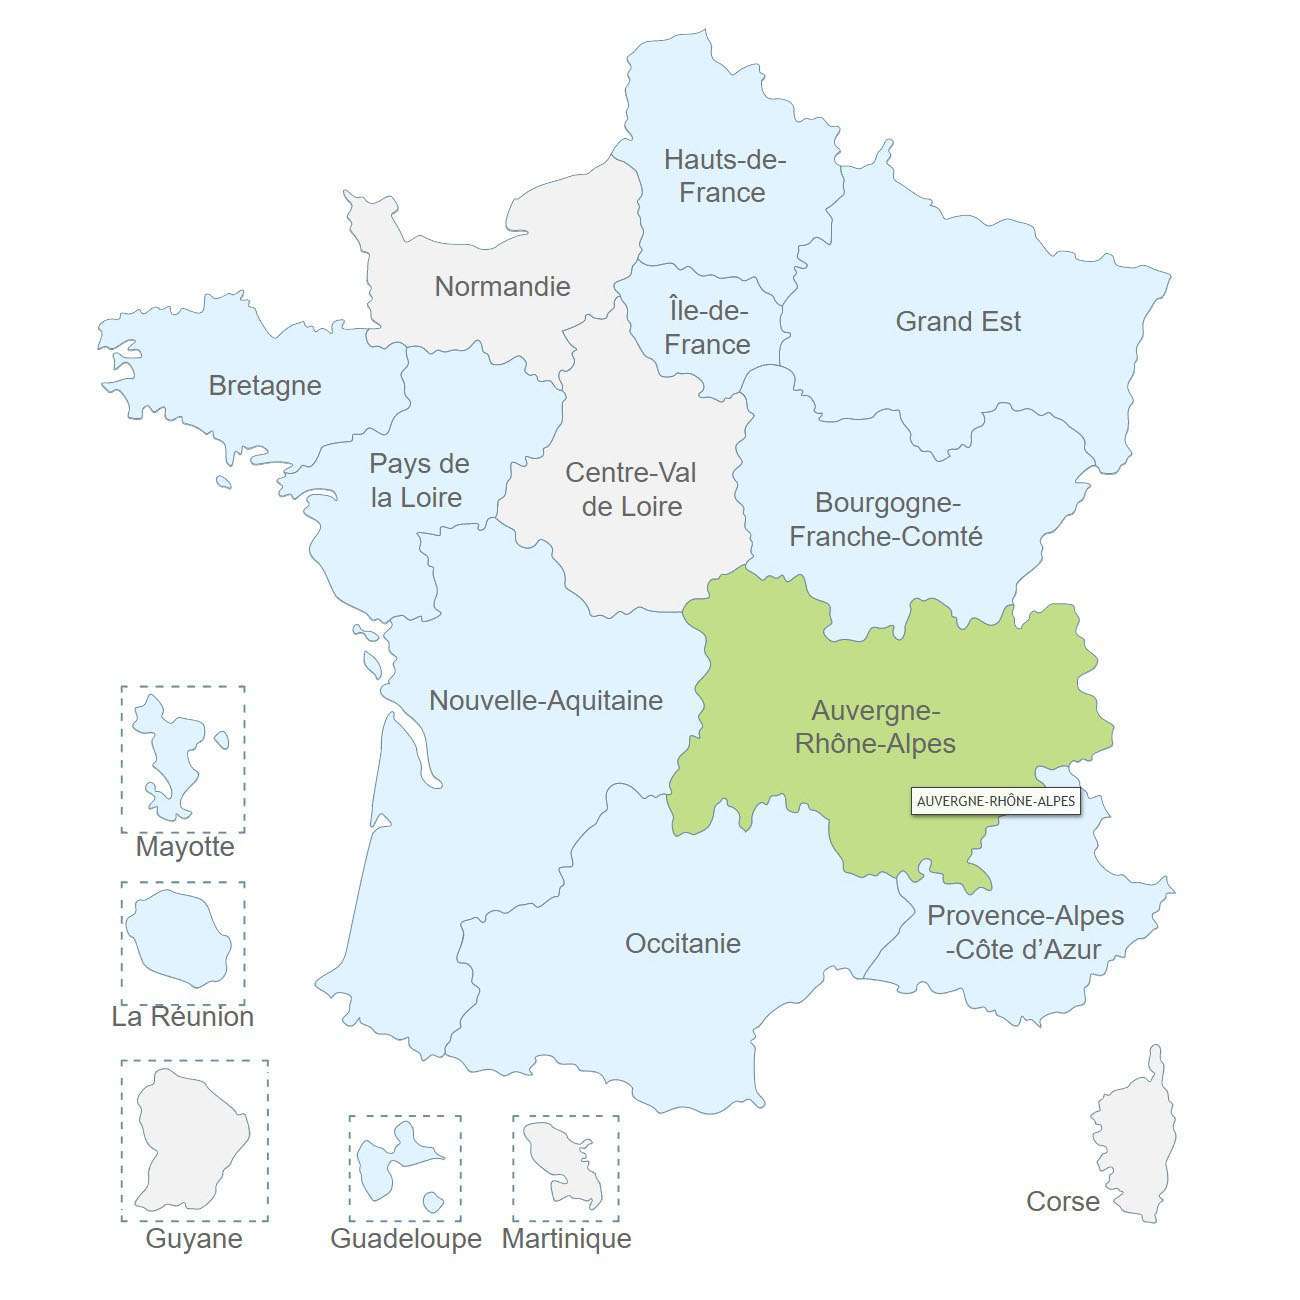 Région Auvergne-Rhône-Alpes de l'association ADC